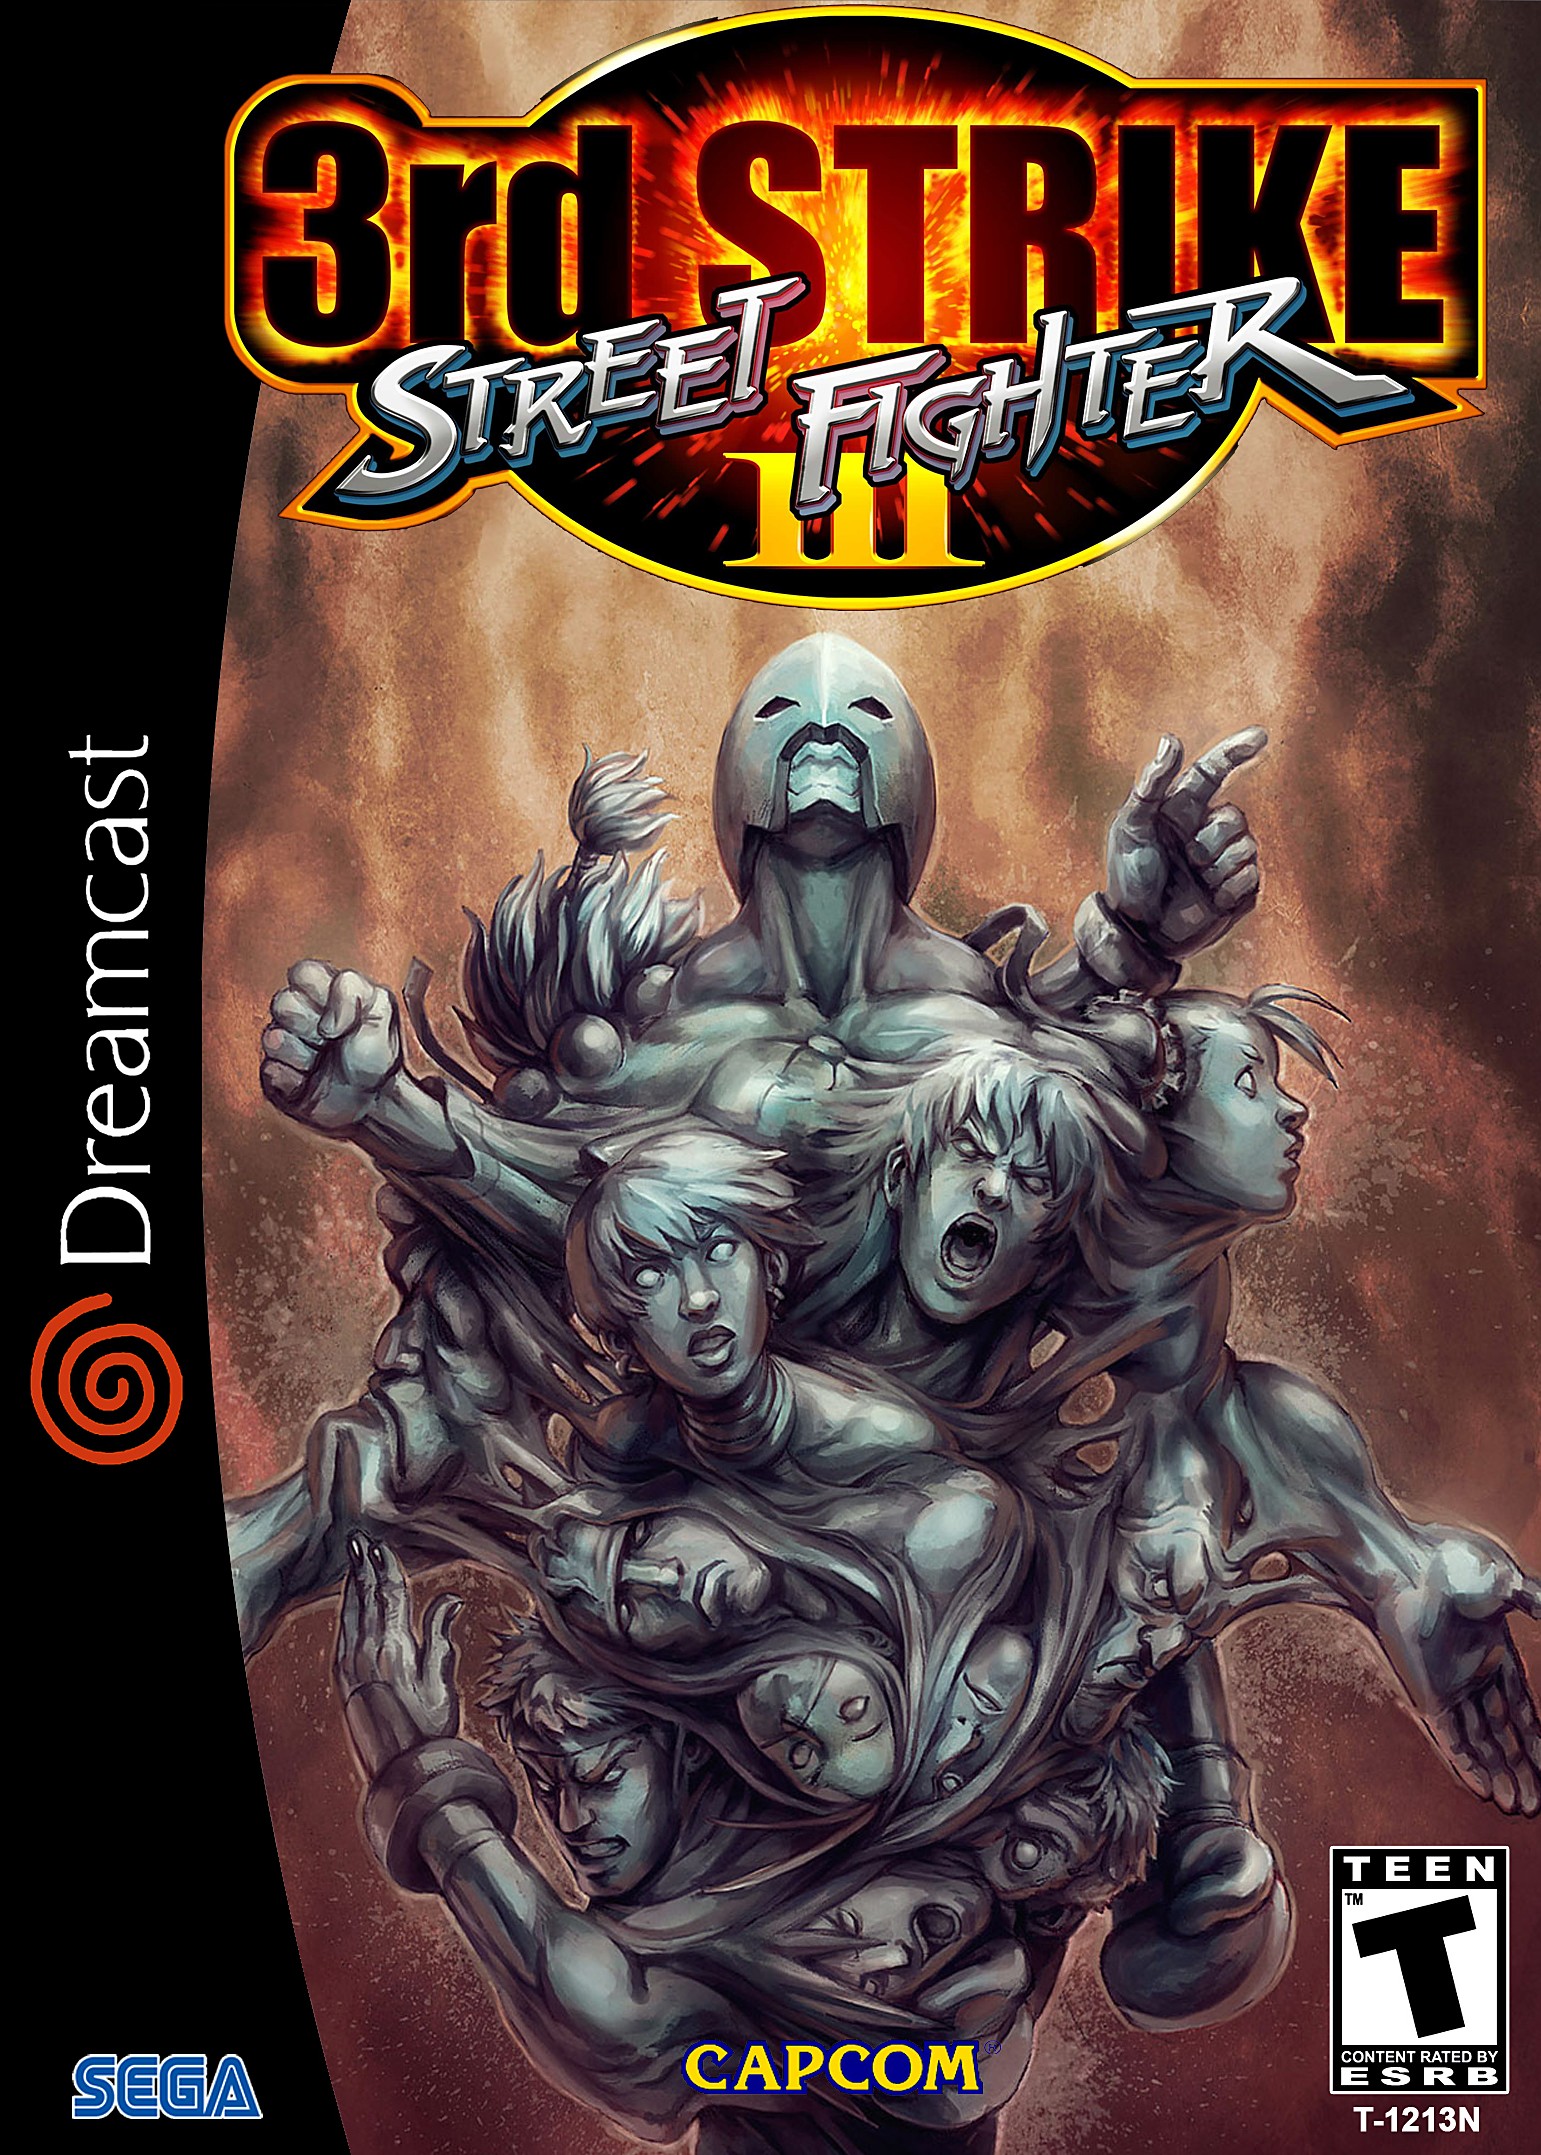 'Street Fighter 3: 3rd Strike'